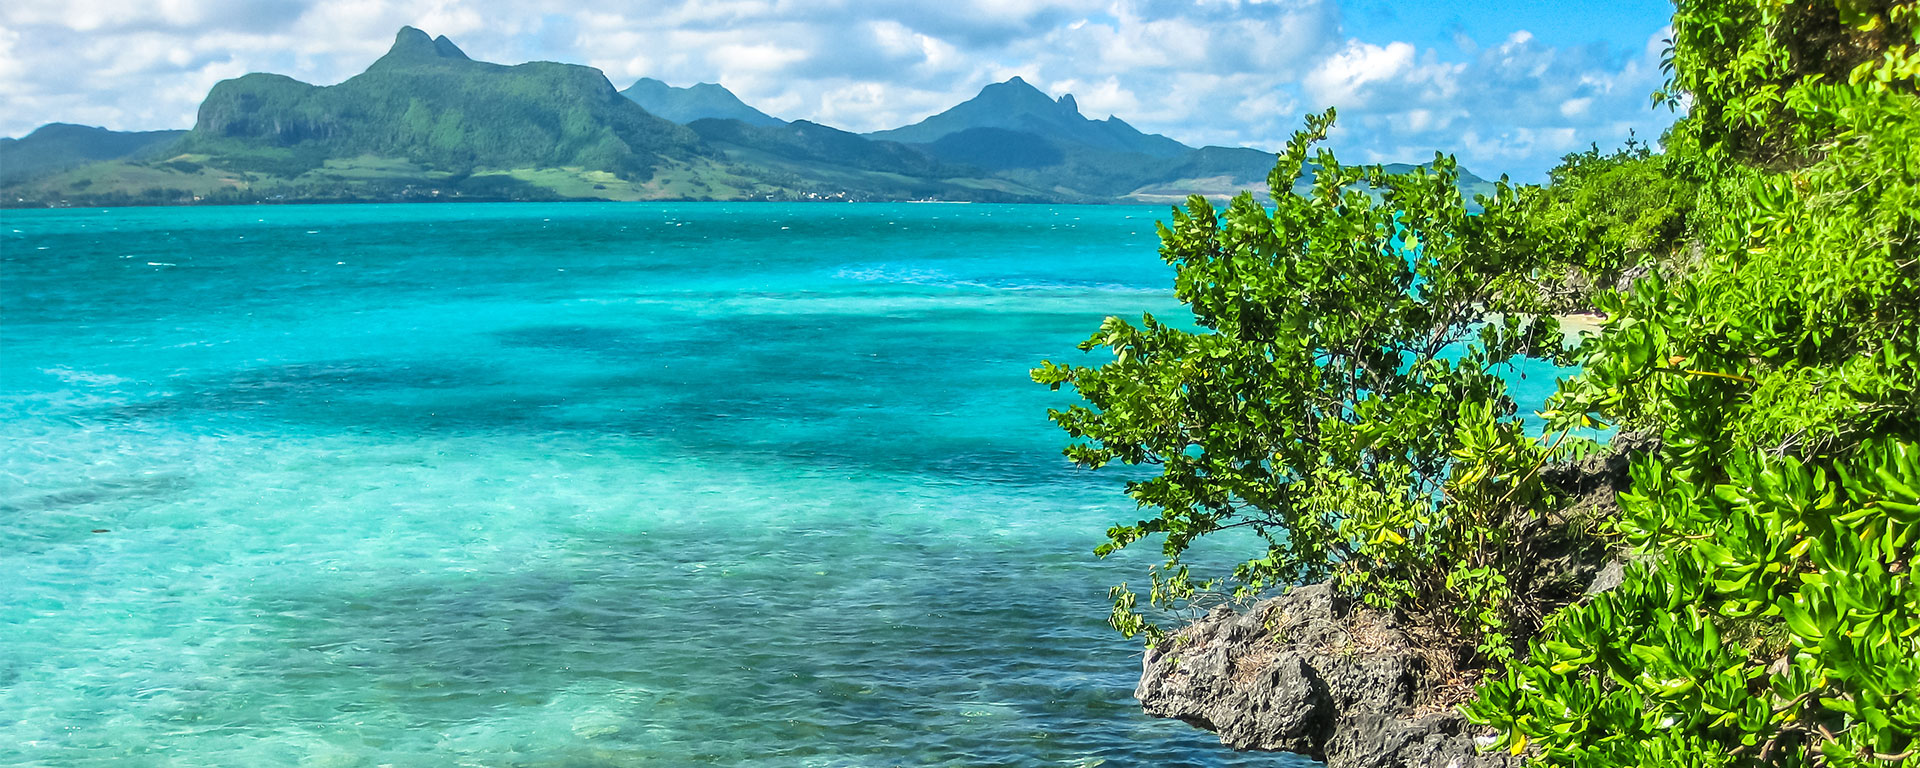 Descubra las mejores cosas que puede hacer en el sureste de Mauricio